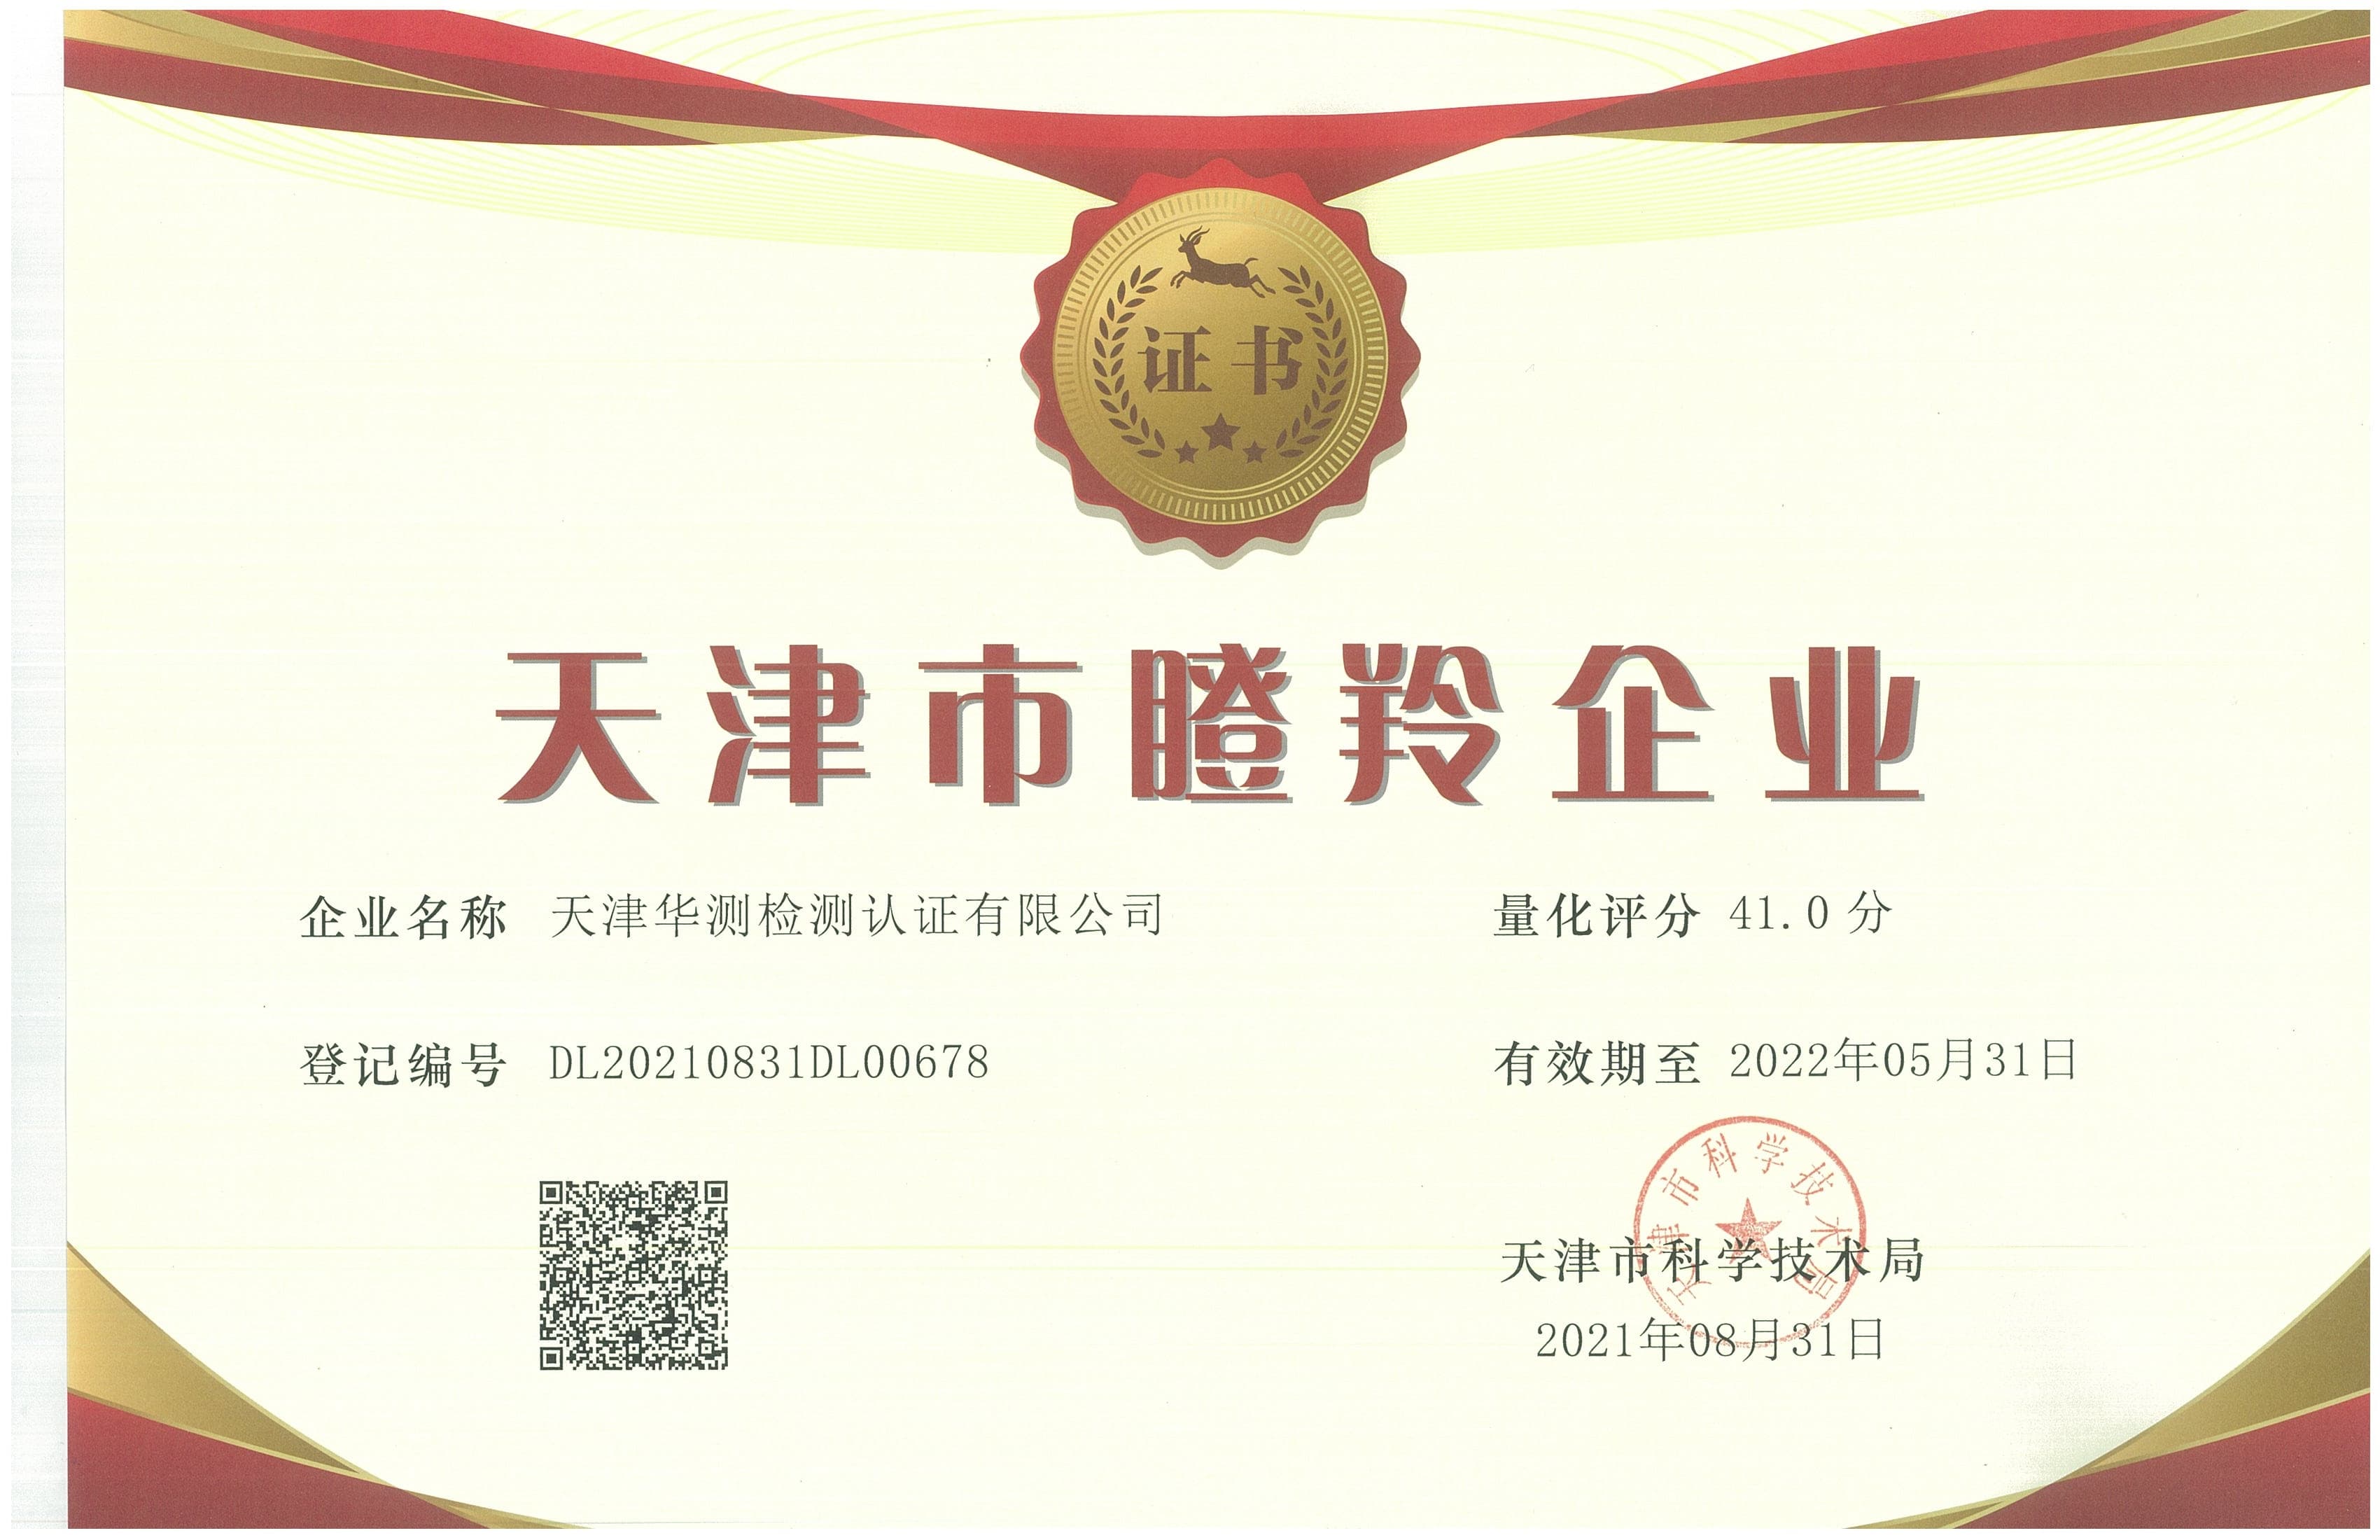 Gazelle Enterprise Certificate-Tianjin